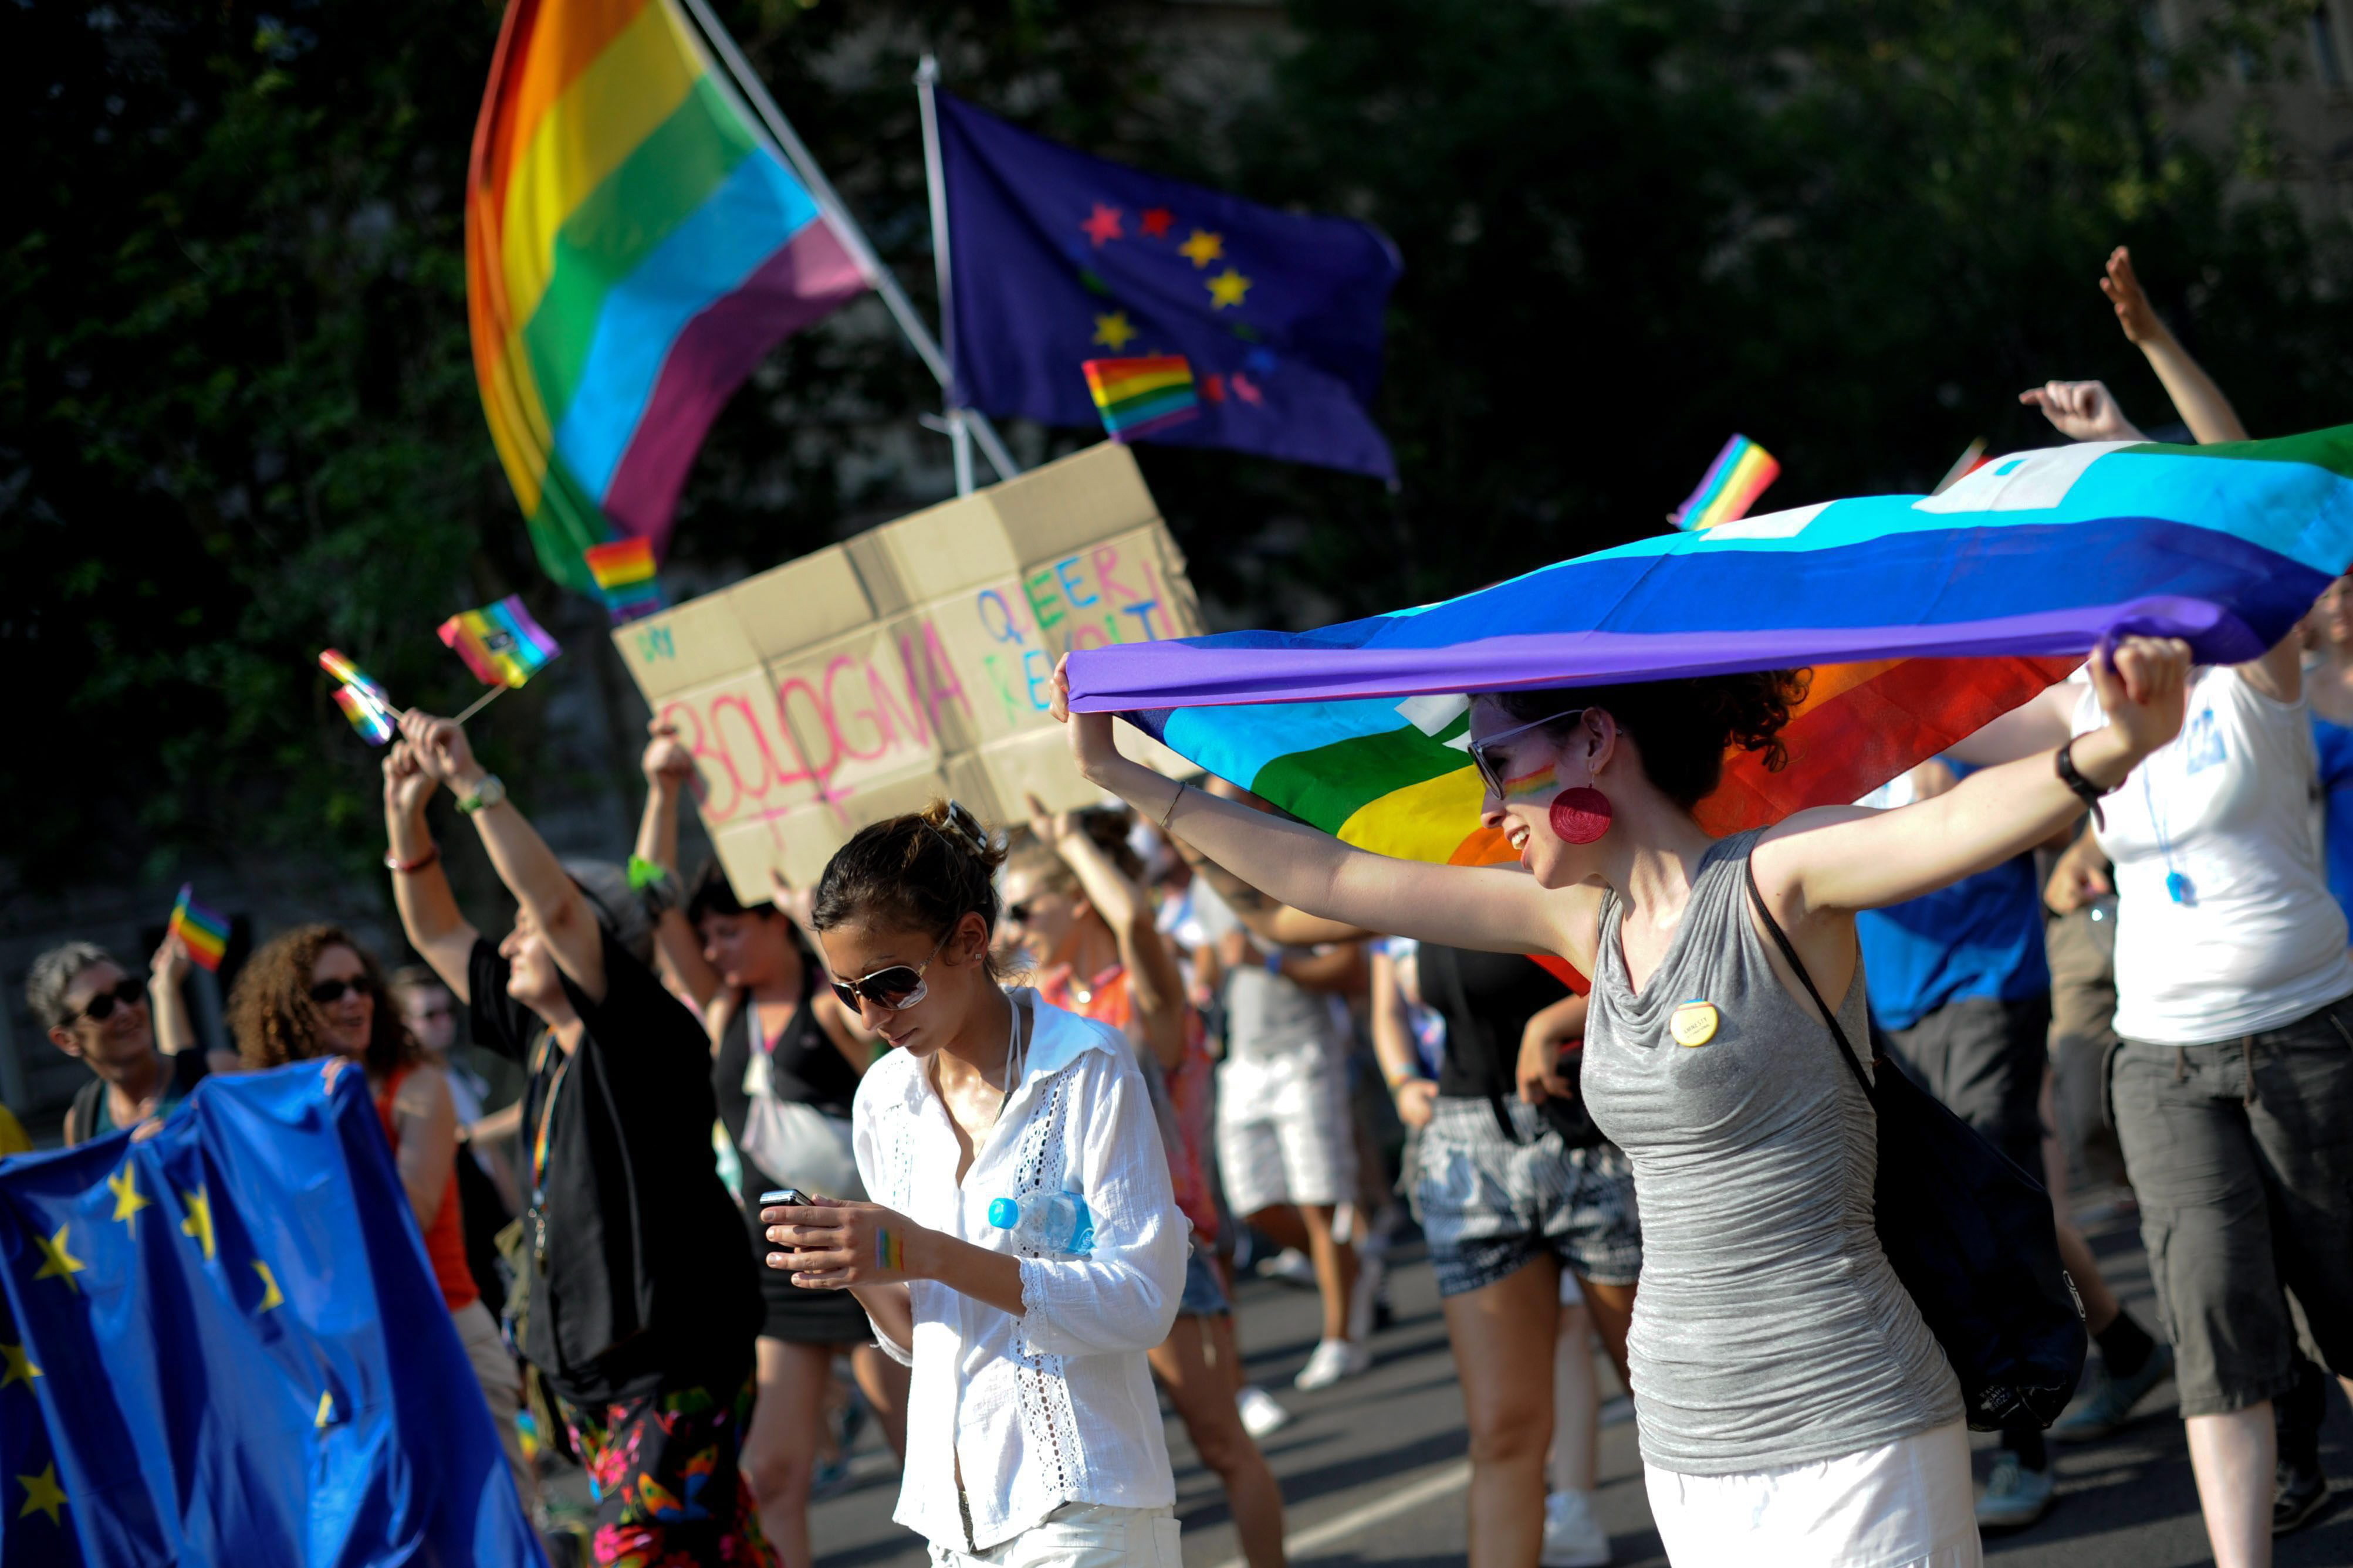 Teilnehmer des Budapest Pride schwenken Regenbogen- und EU-Fahnen (Archivbild).